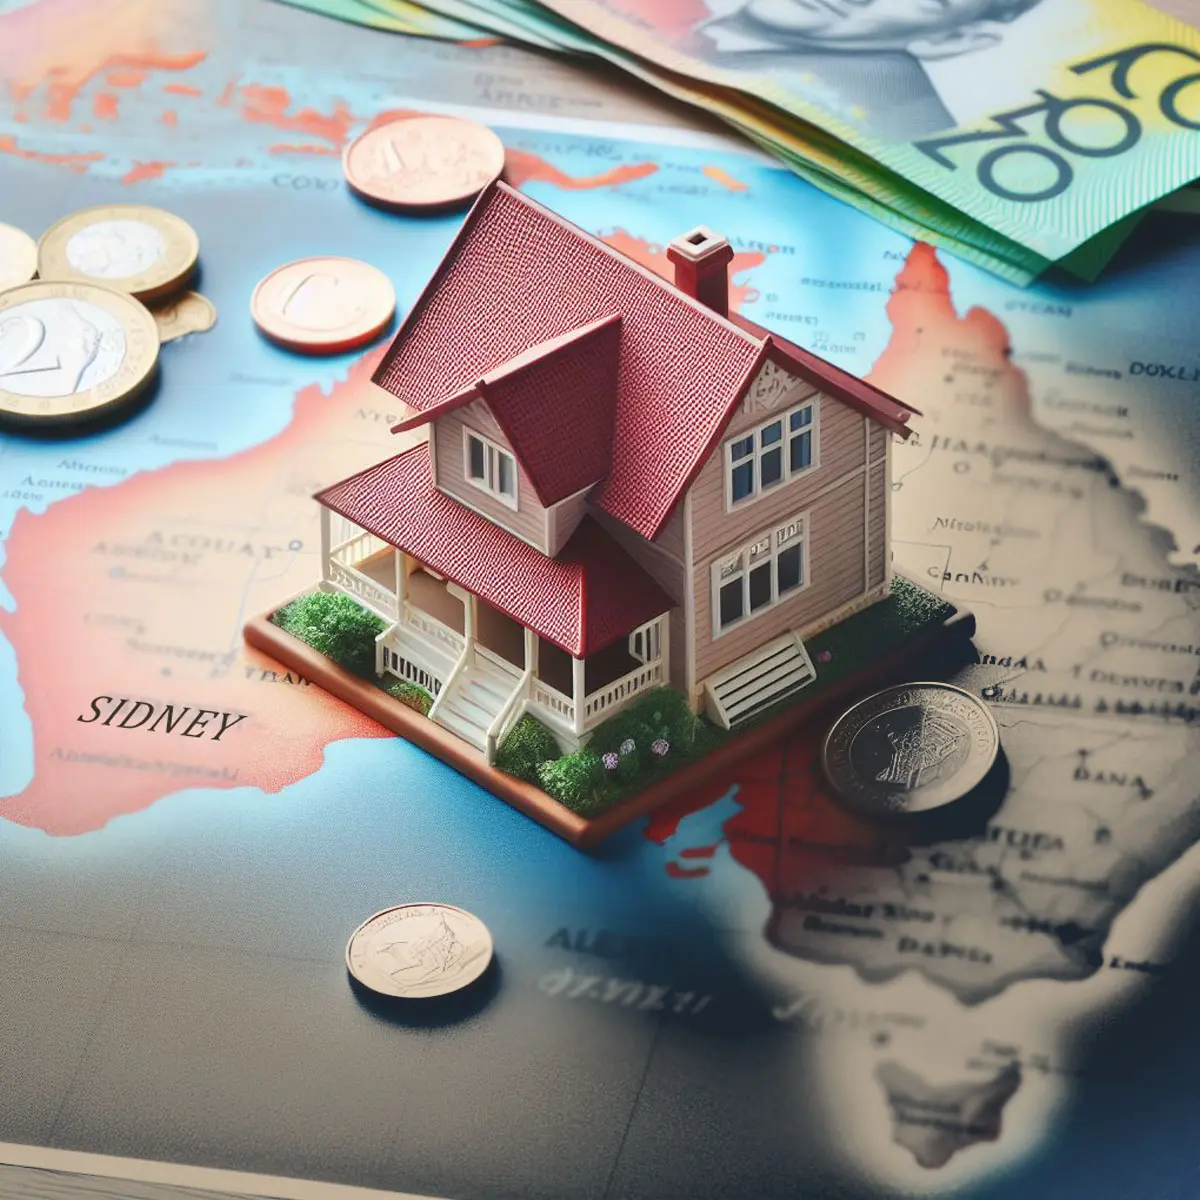 تفاوت قیمت خانه در سیدنی با سایر شهر های استرالیا